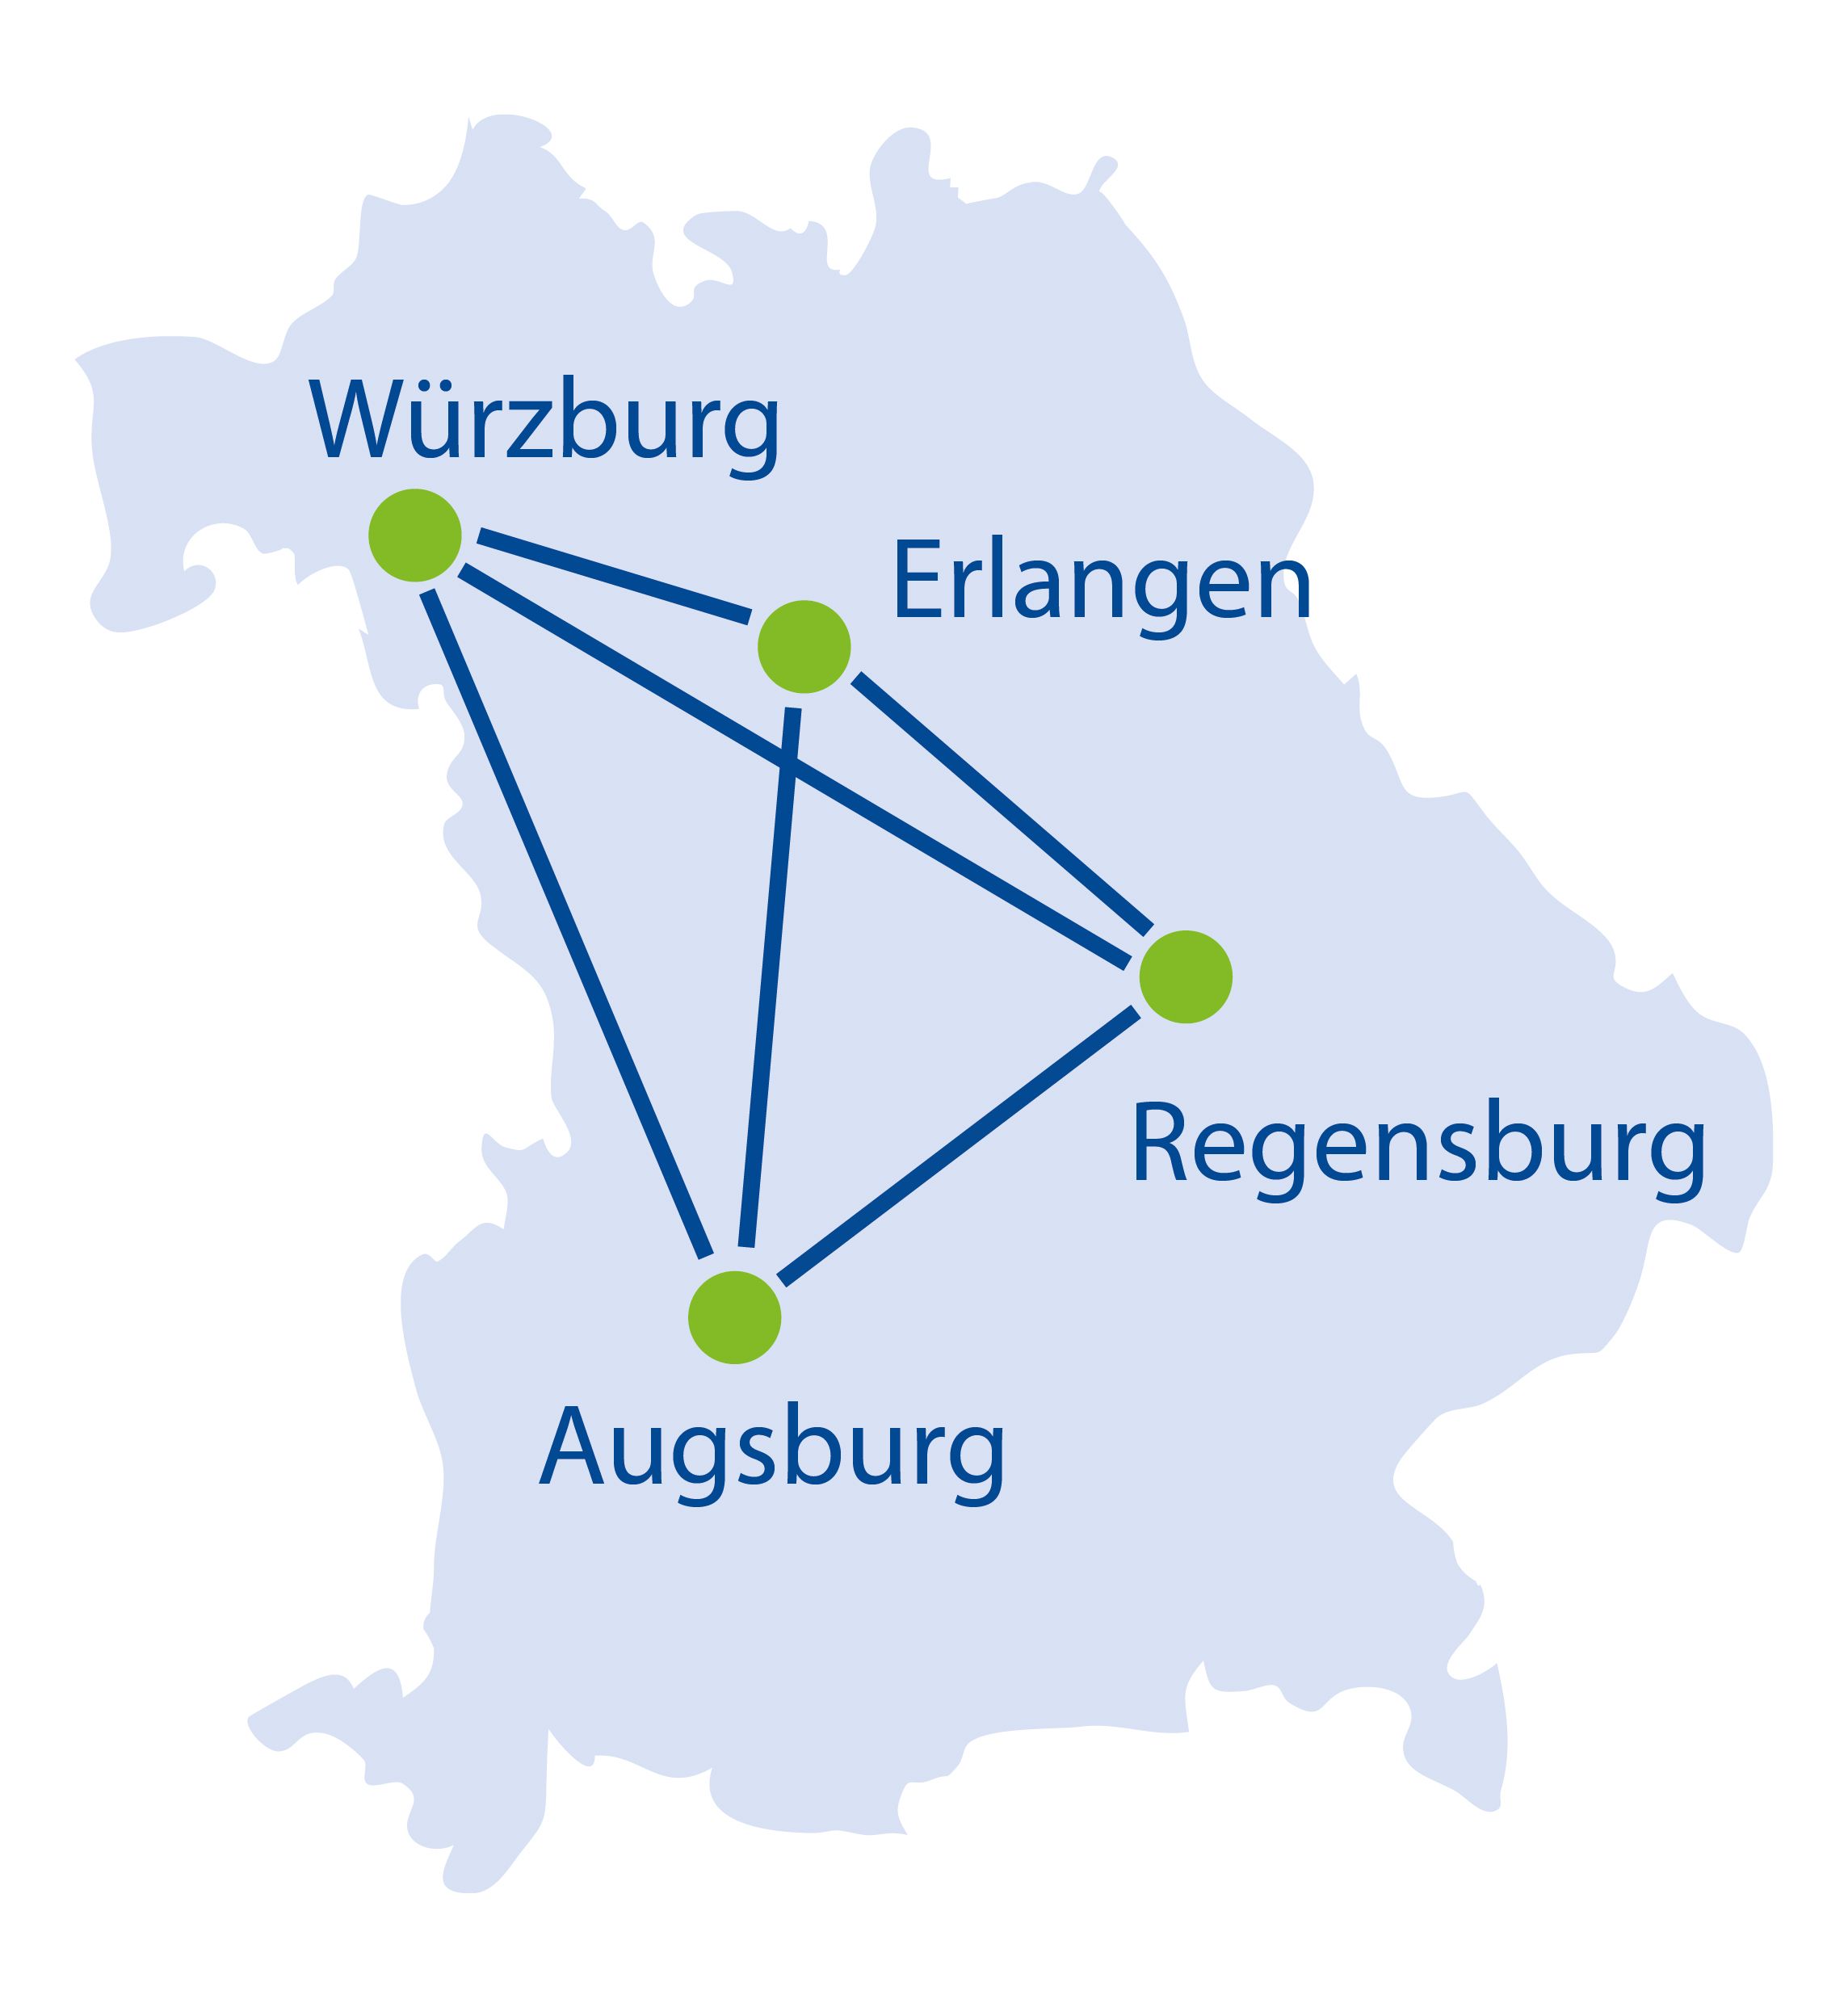 Bayernkarte mit den Partnern Würzburg, Erlangen, Regensburg und Augsburg eingetragen